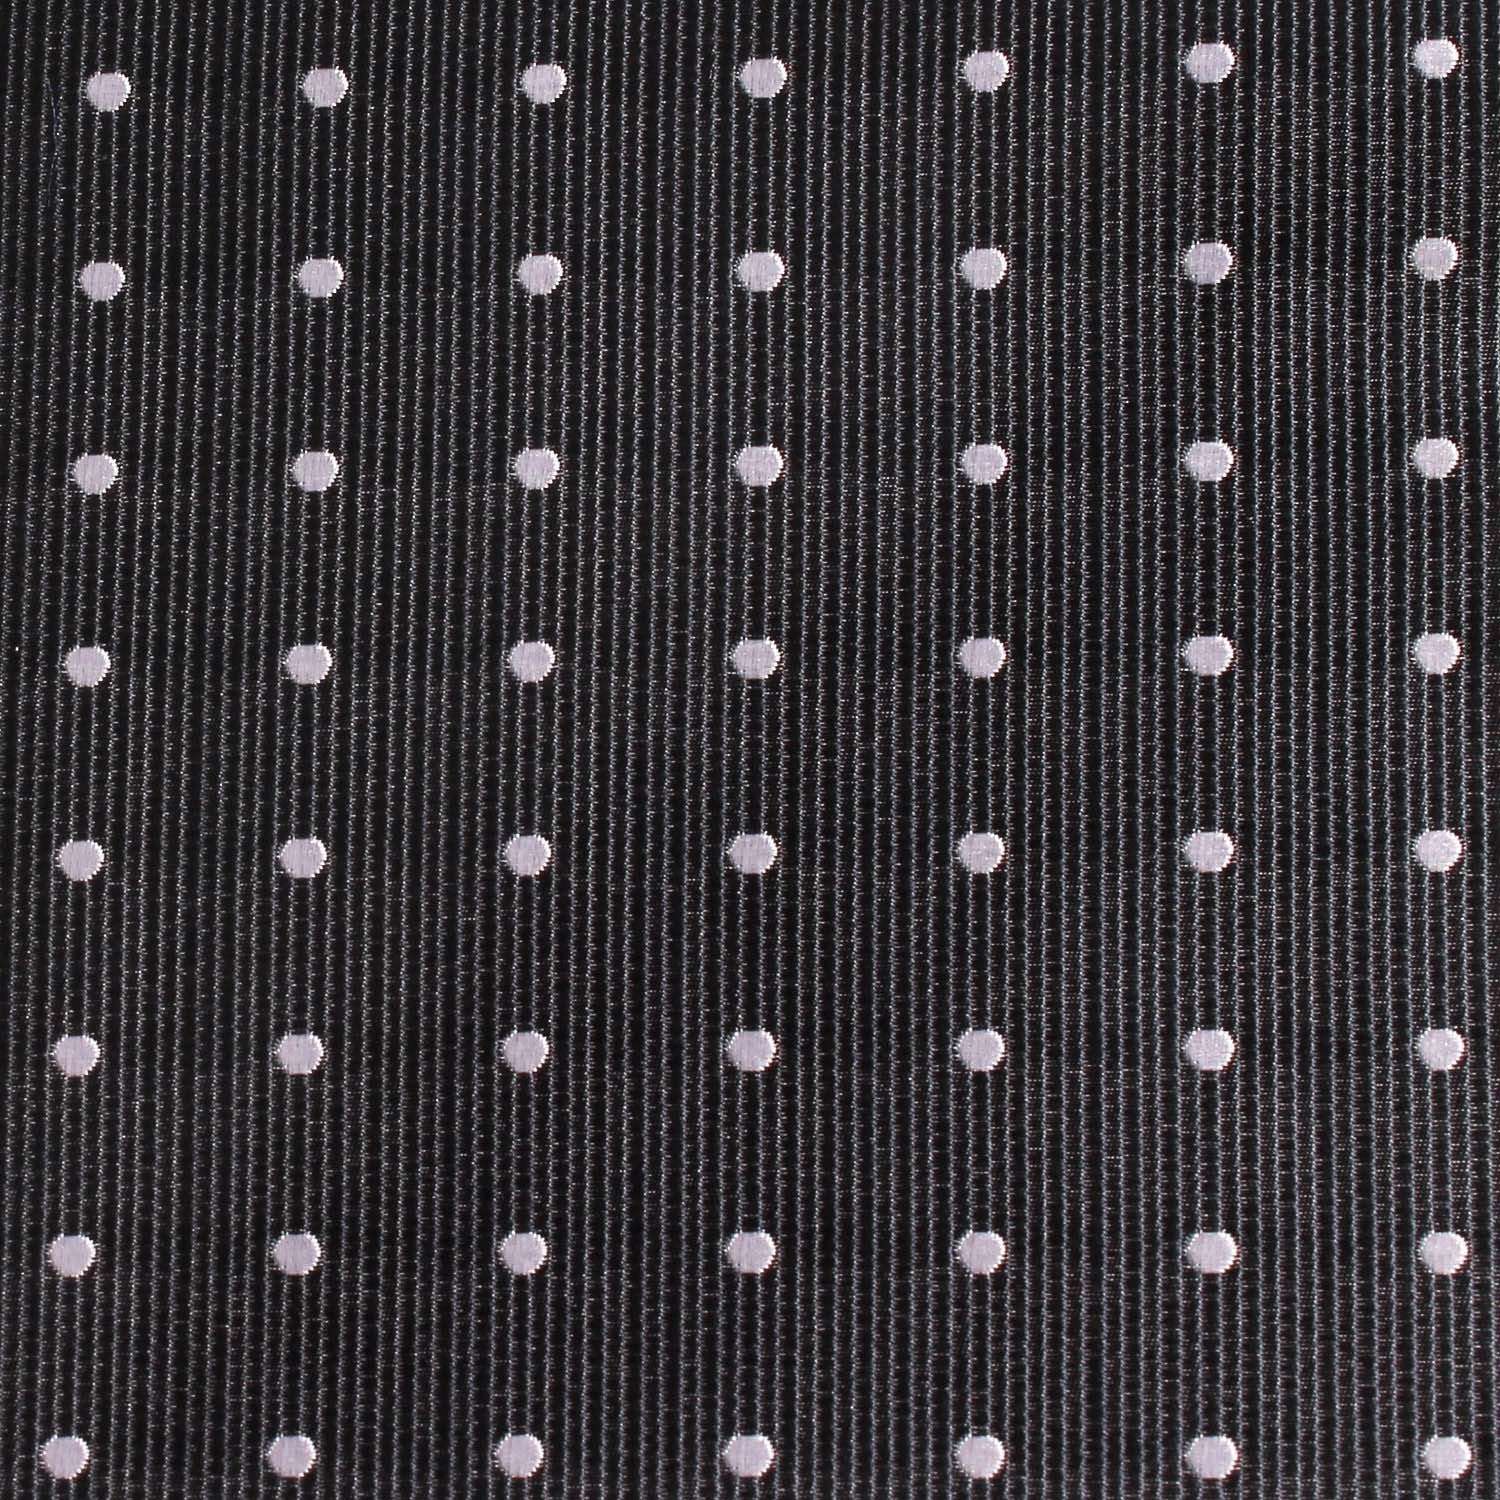 Dark Midnight Blue with White Polka Dots Fabric Necktie M140